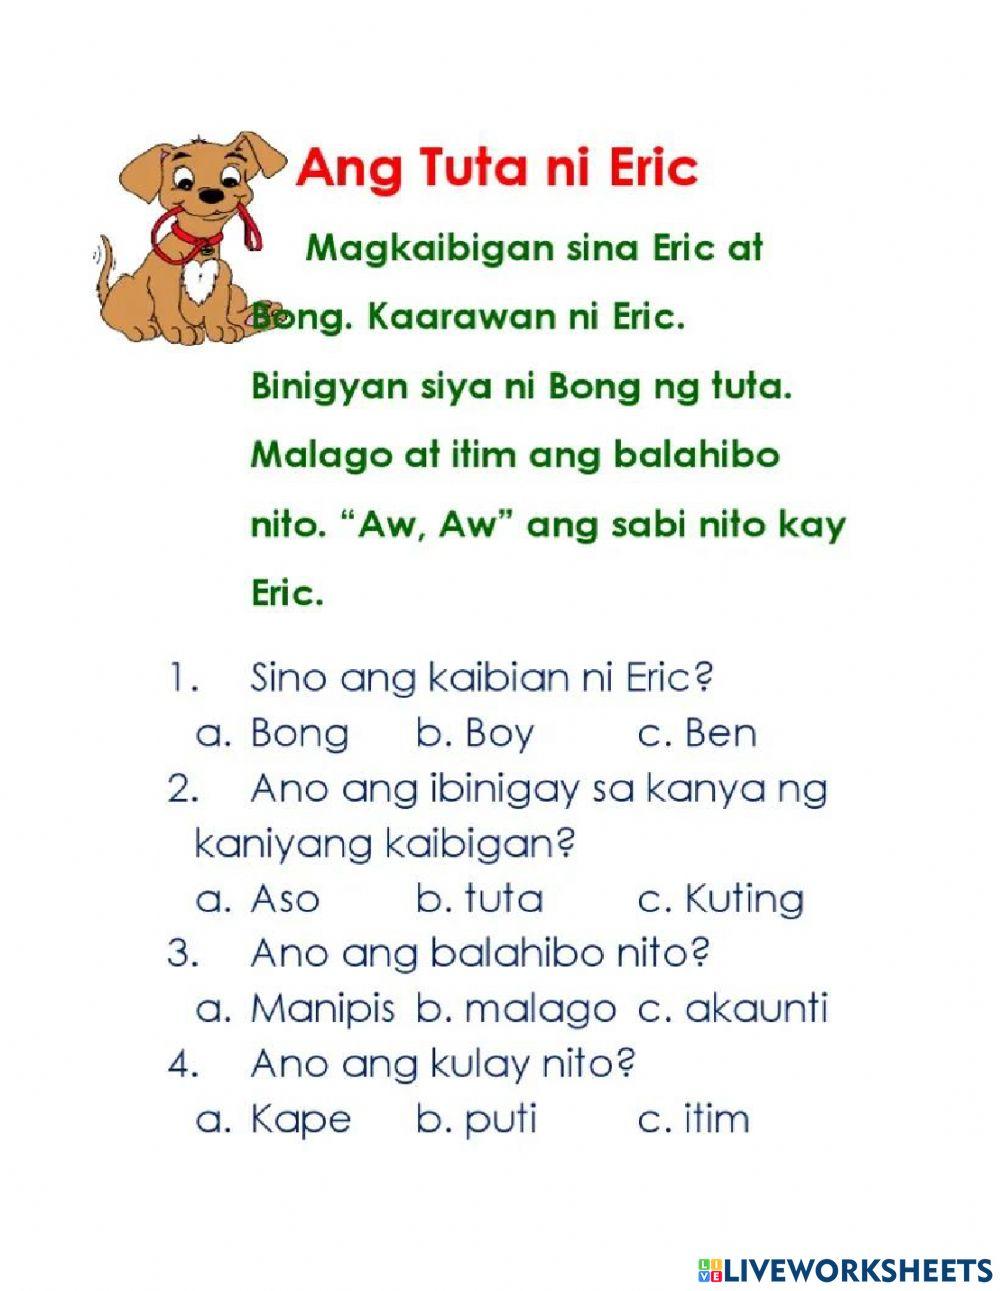 Ang Tuta ni Eric